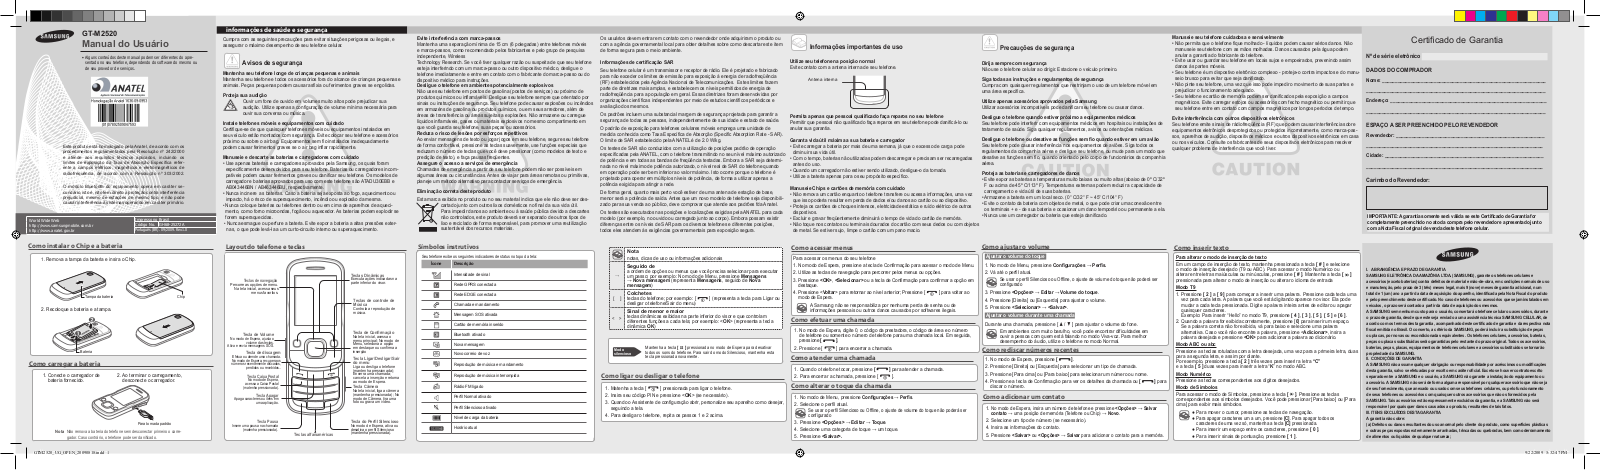 Samsung GT-M2520L User Manual